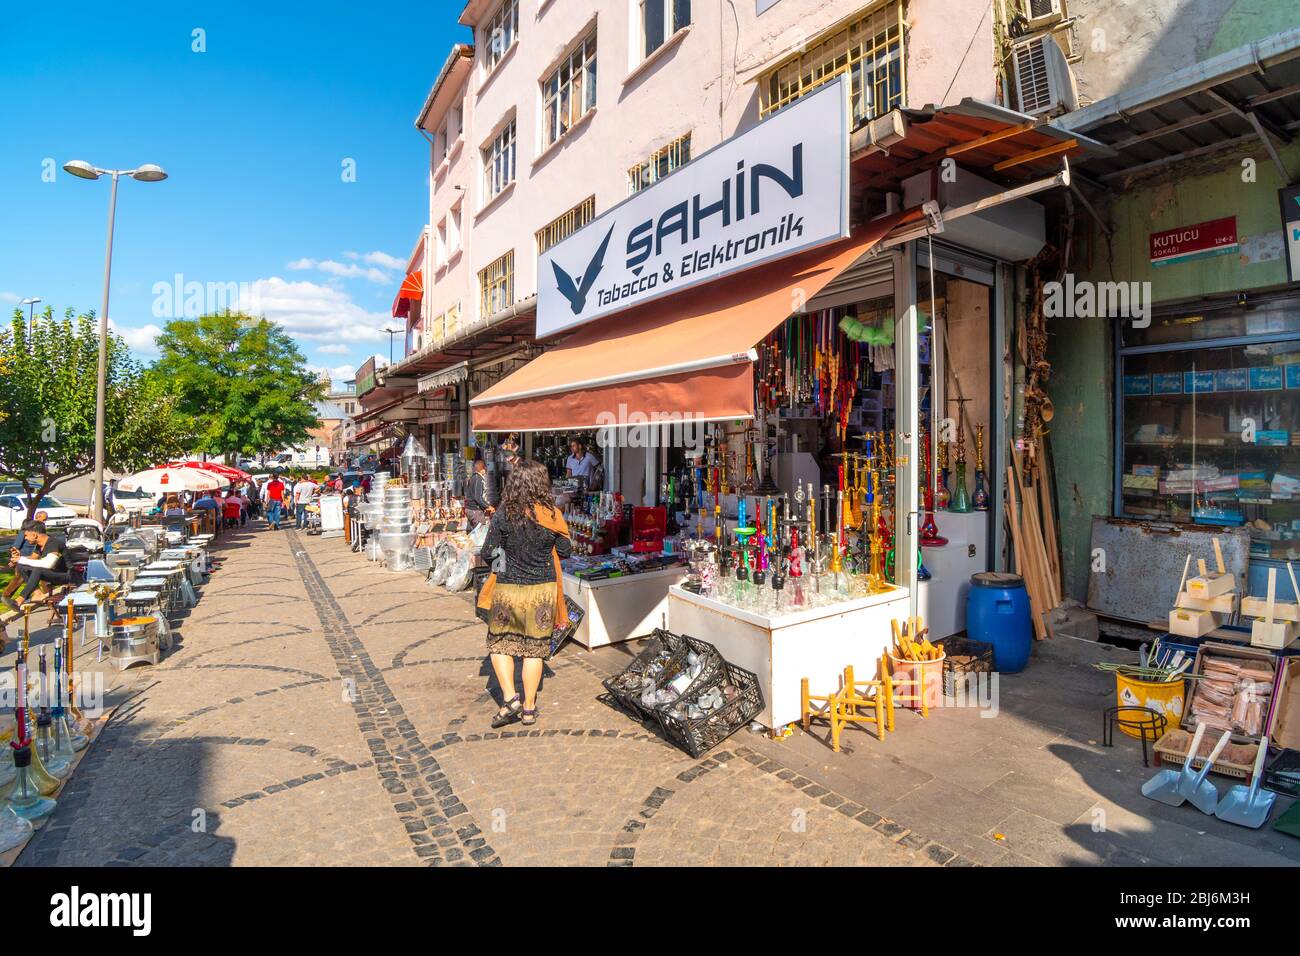 Eine Frau geht an einem bunten Geschäft vorbei, das Wasserpfeifen und andere Souvenirs und Geschenke in der Nähe des Eminonu Bazaar und des Marktes in Istanbul verkauft. Stockfoto